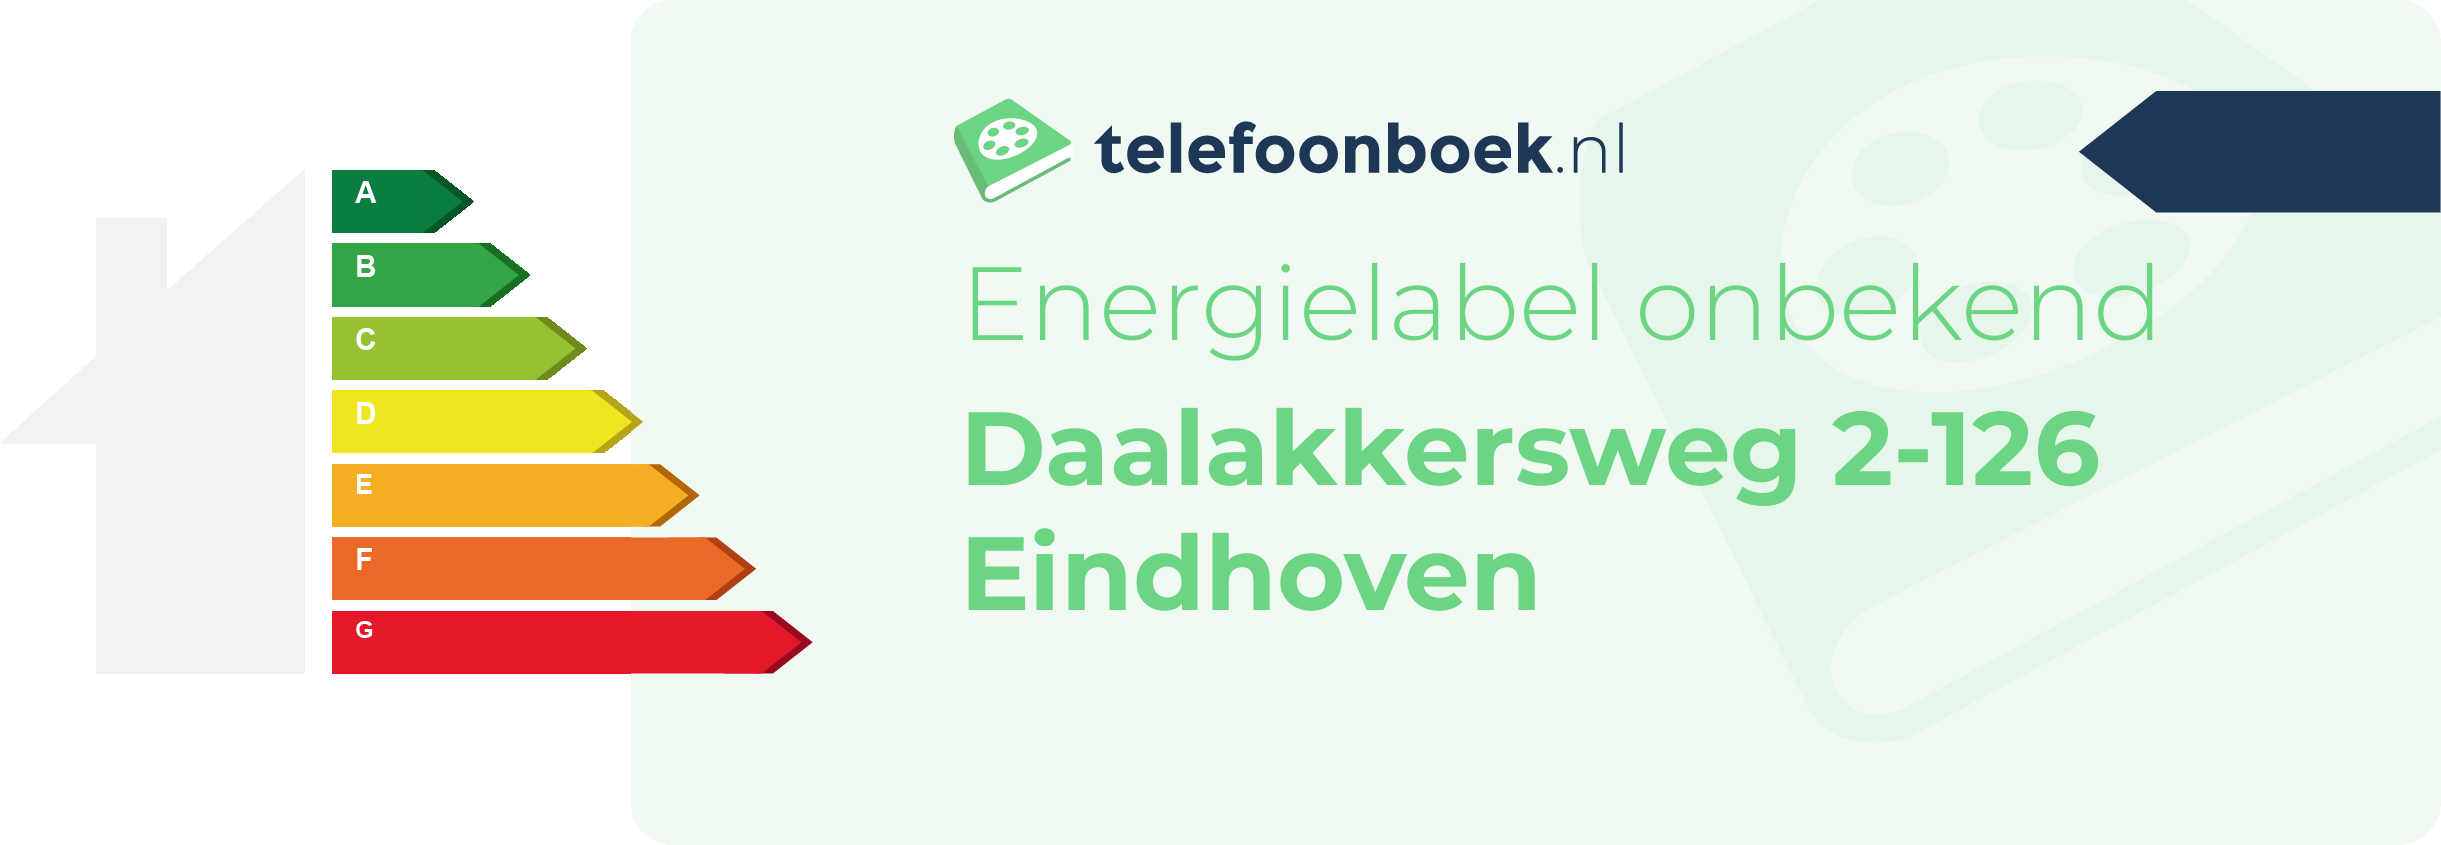 Energielabel Daalakkersweg 2-126 Eindhoven